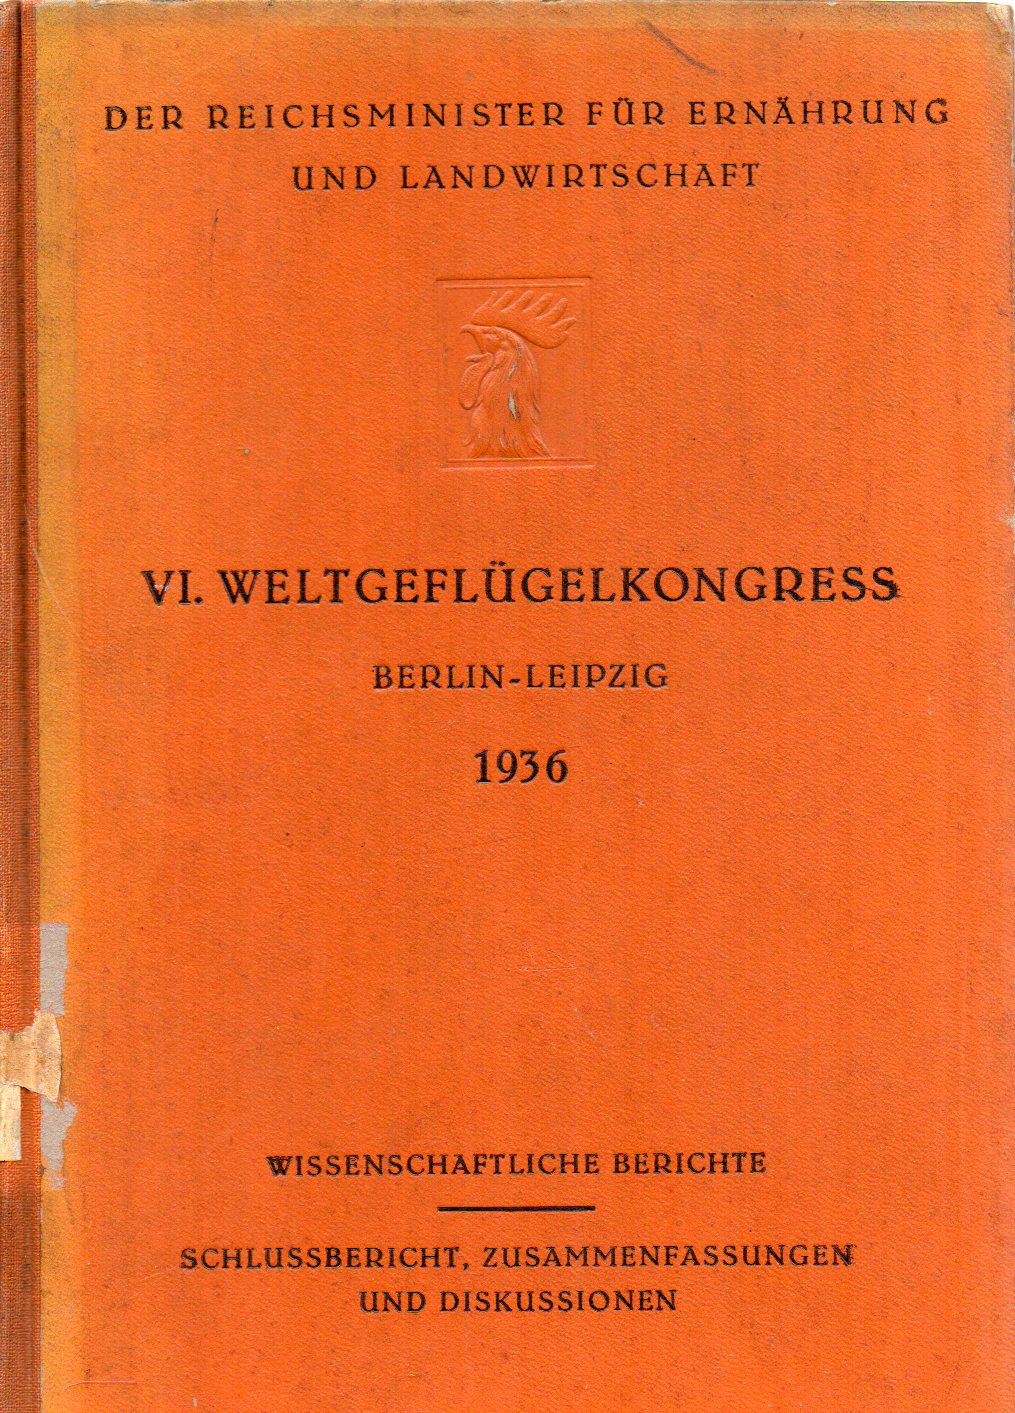 Reichsminister für Ernährung und Landwirtschaft  Schlussbericht des VI.Weltgeflügelkongresses 24.Juli bis 2.August 1936 